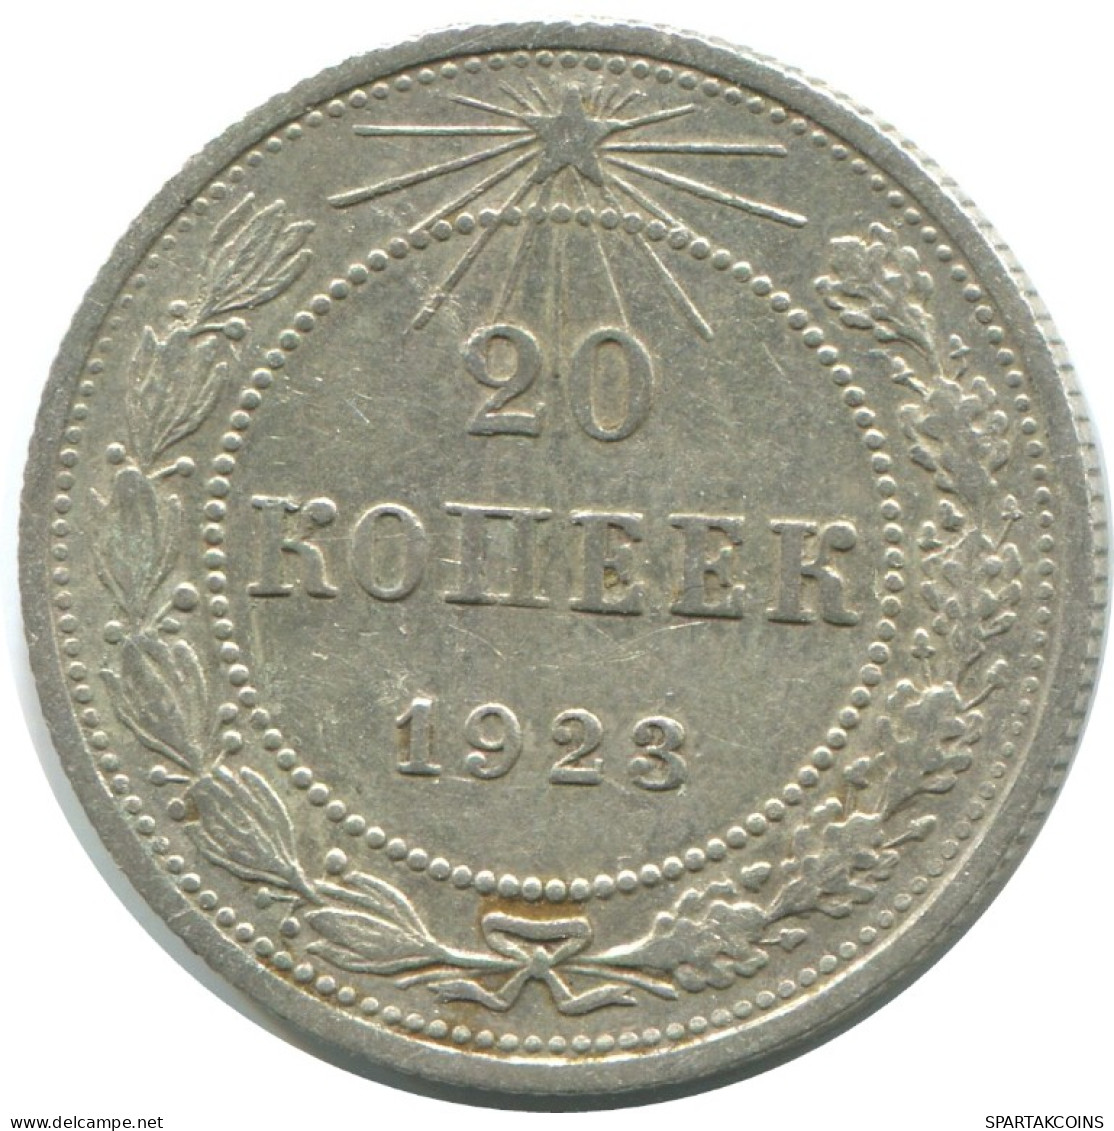 20 KOPEKS 1923 RUSIA RUSSIA RSFSR PLATA Moneda HIGH GRADE #AF536.4.E.A - Russland